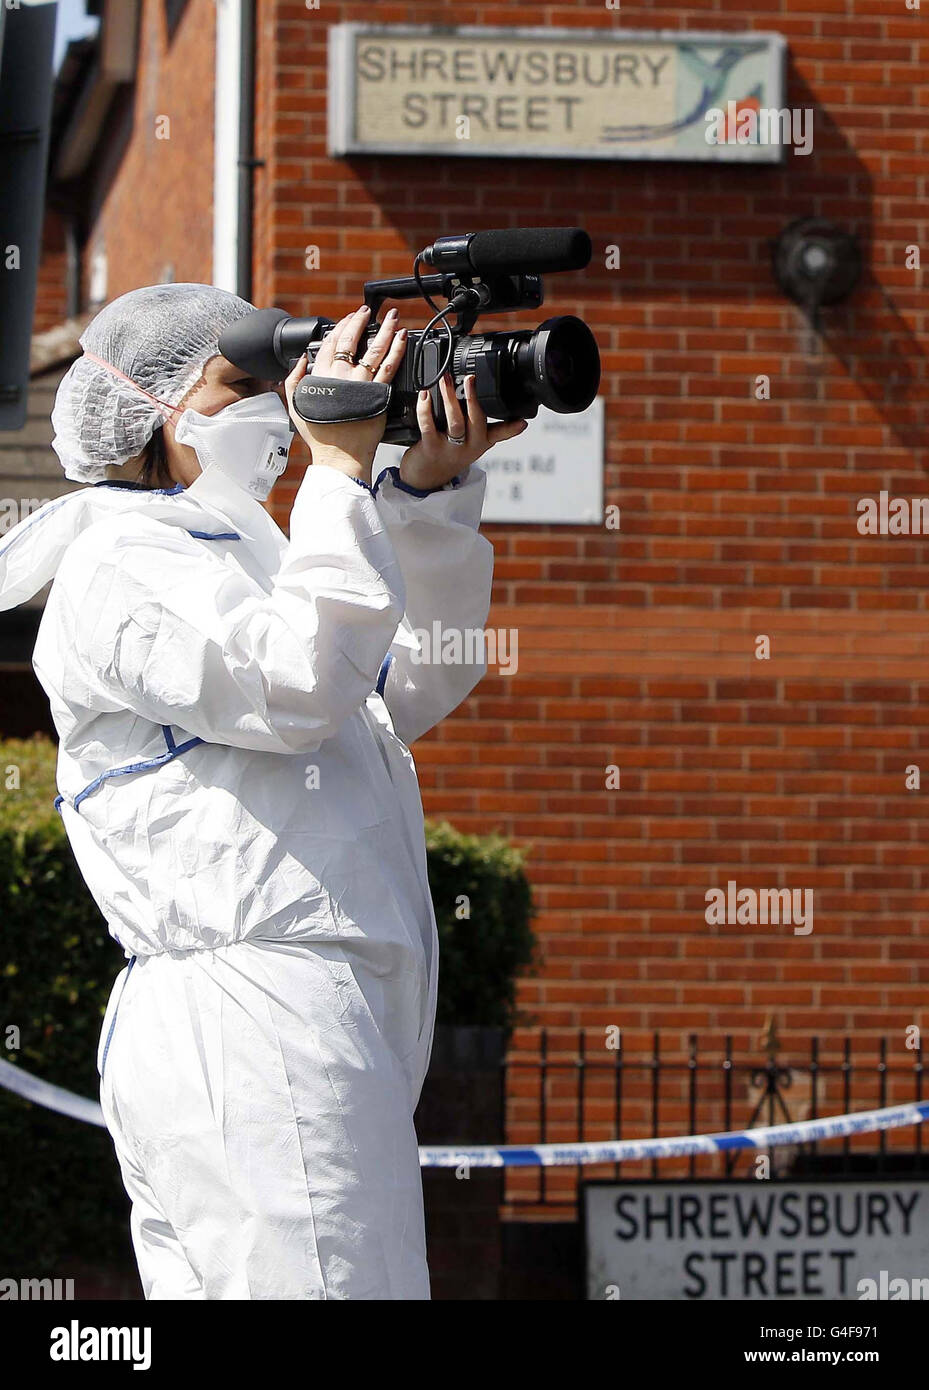 Des scènes d'officier de crime photographiées sur Shrewsbury Street, Manchester, après qu'un commerçant ait été arrêté, suspecté de tentative de meurtre, après qu'un homme essayant de voler son magasin ait été poignardé à mort. Banque D'Images